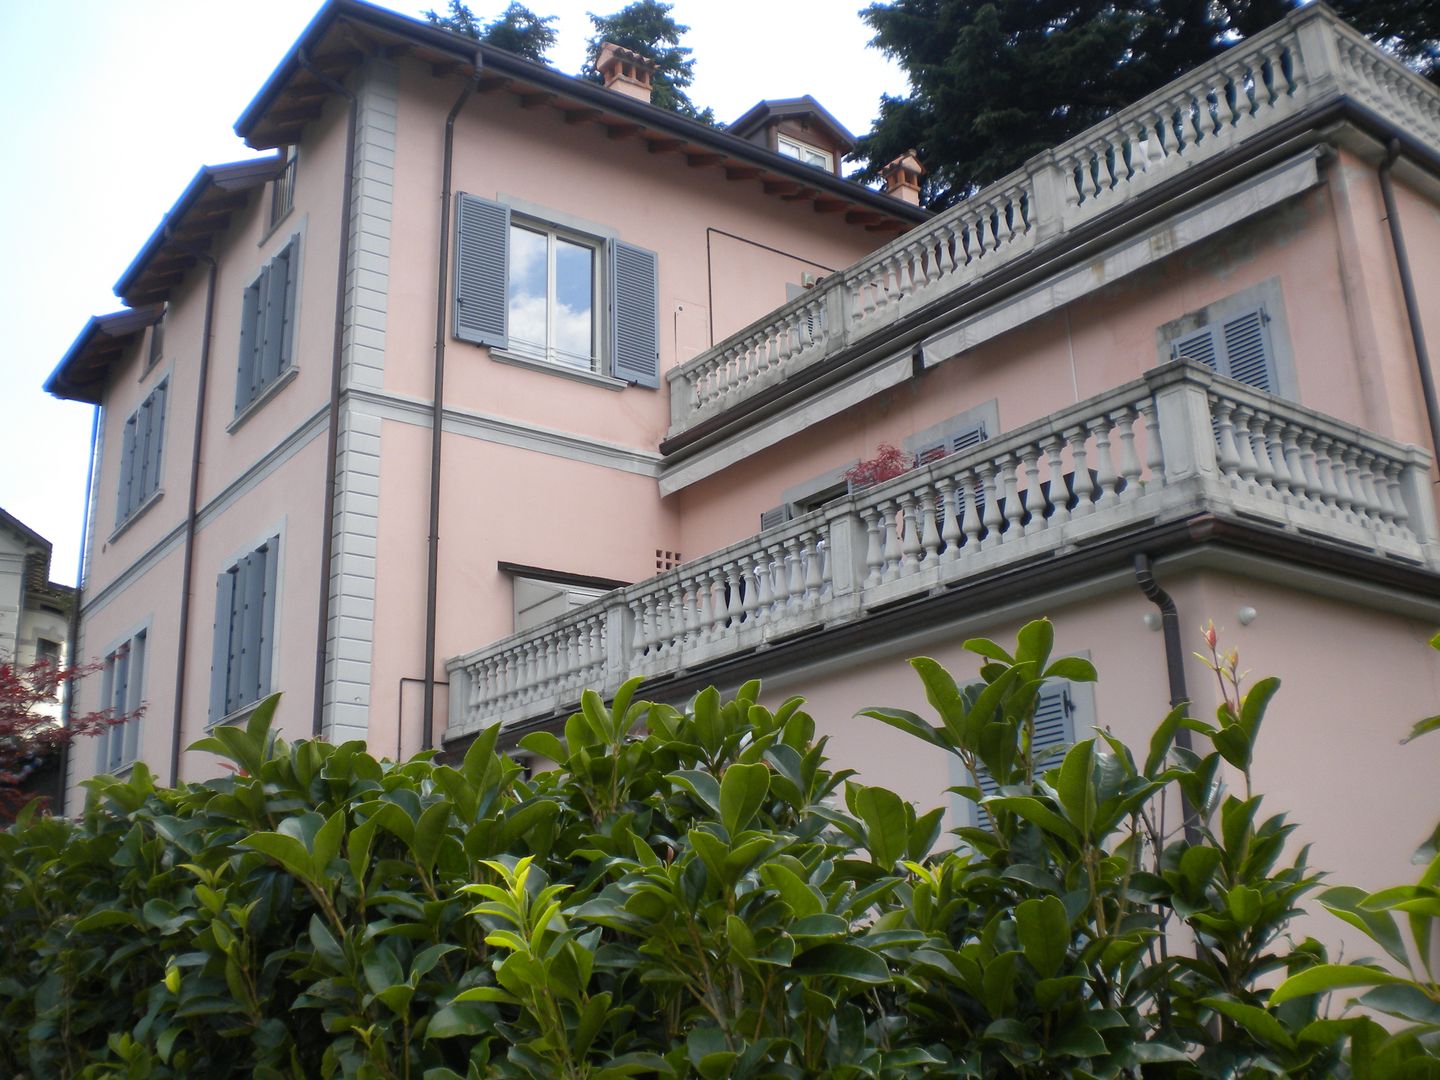 Antica villa sul Lago di Como - Ristrutturazione Completa, Formarredo Due design 1967 Formarredo Due design 1967 Patios & Decks